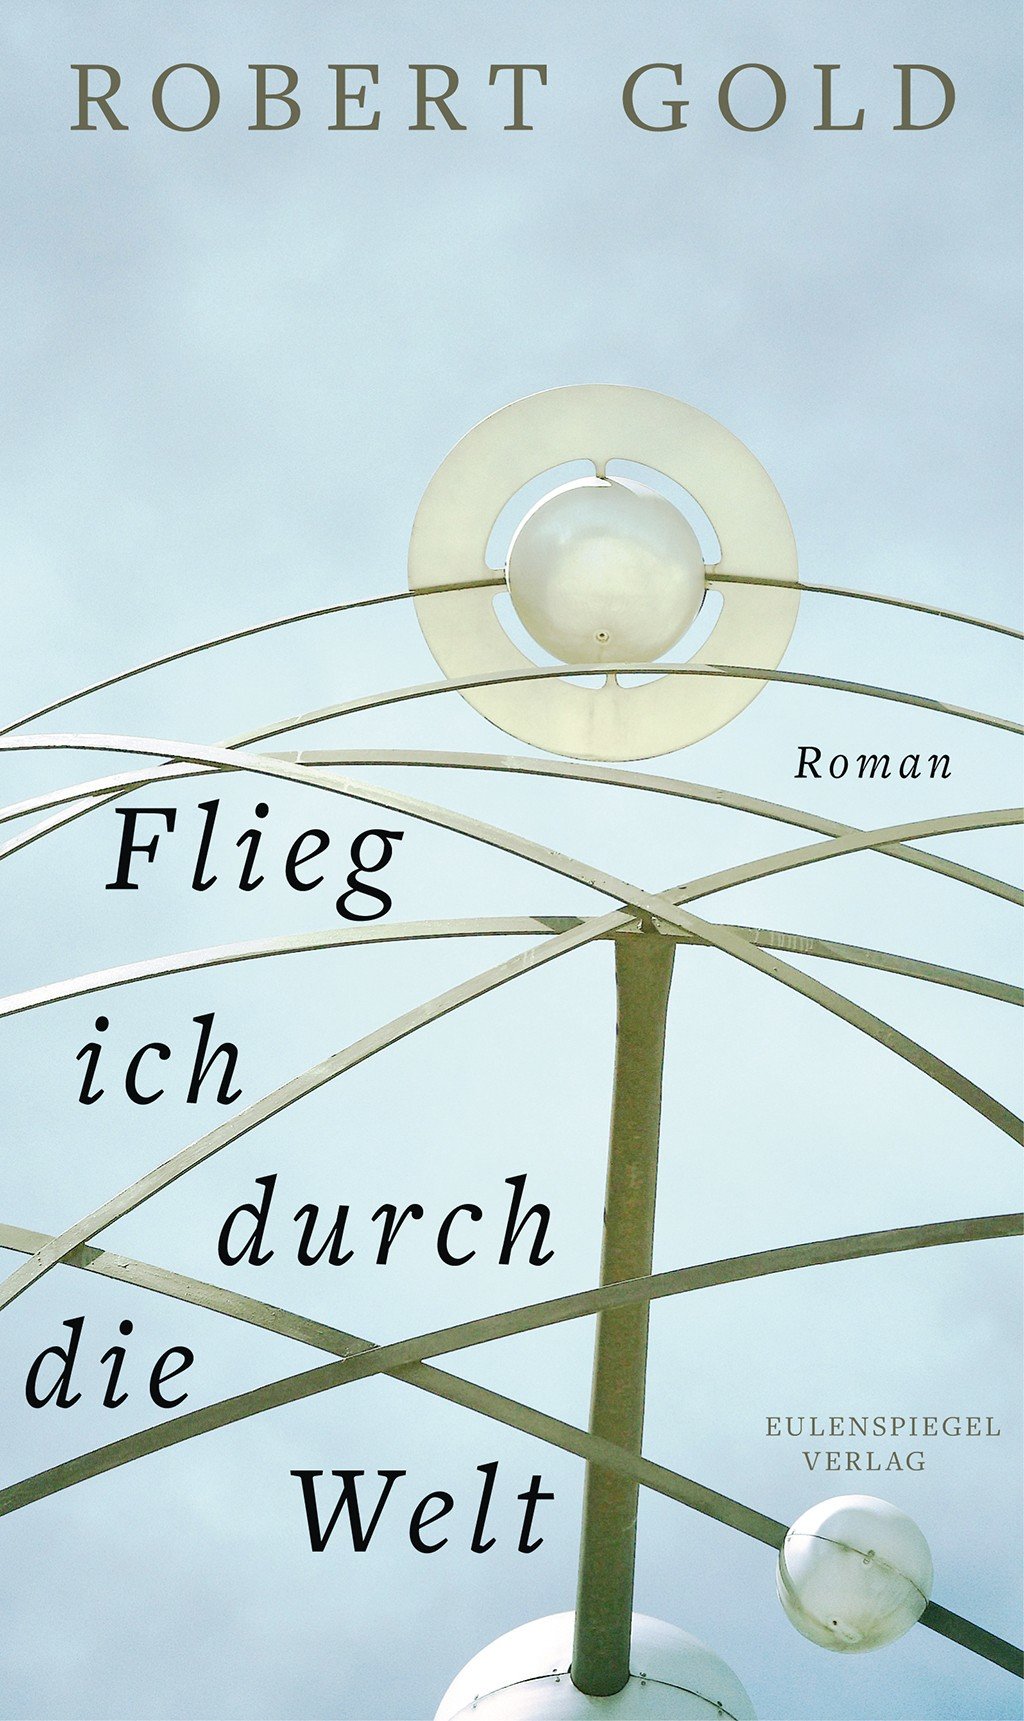 Robert Gold, Flieg ich durch die Welt, Eulenspiegel Verlag, 368 Seiten, 19,99 € 